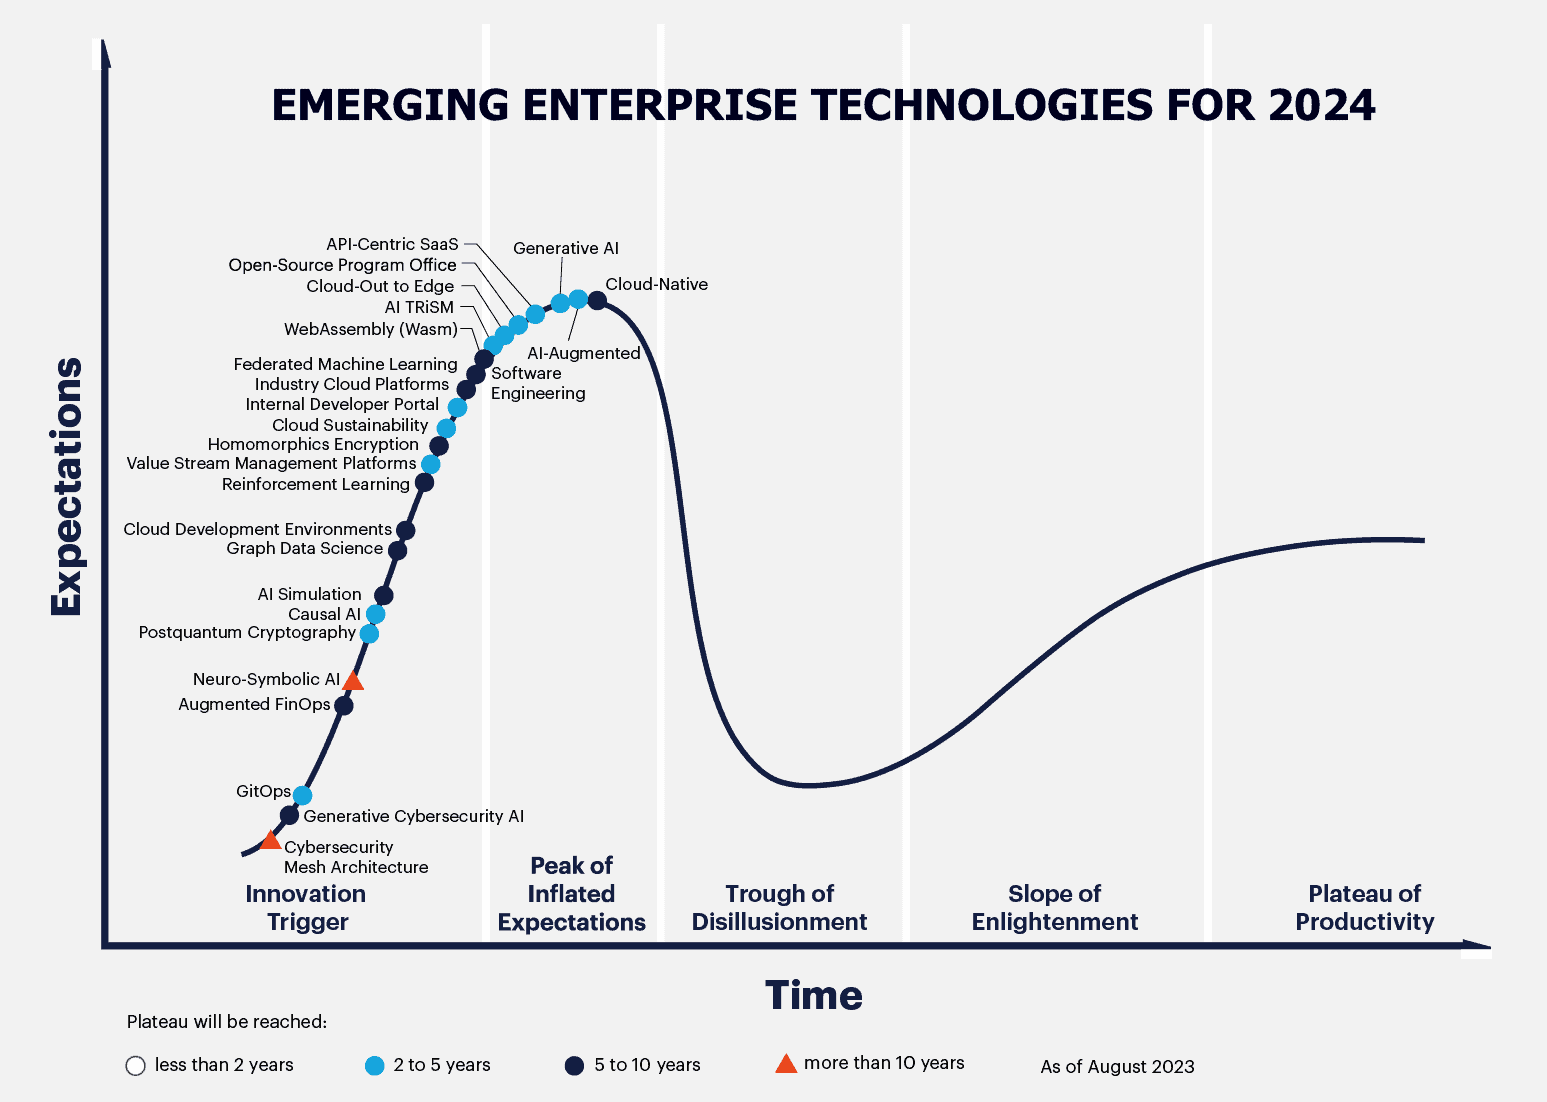 Technology growth for enterprises in 2024. Source: Gartner